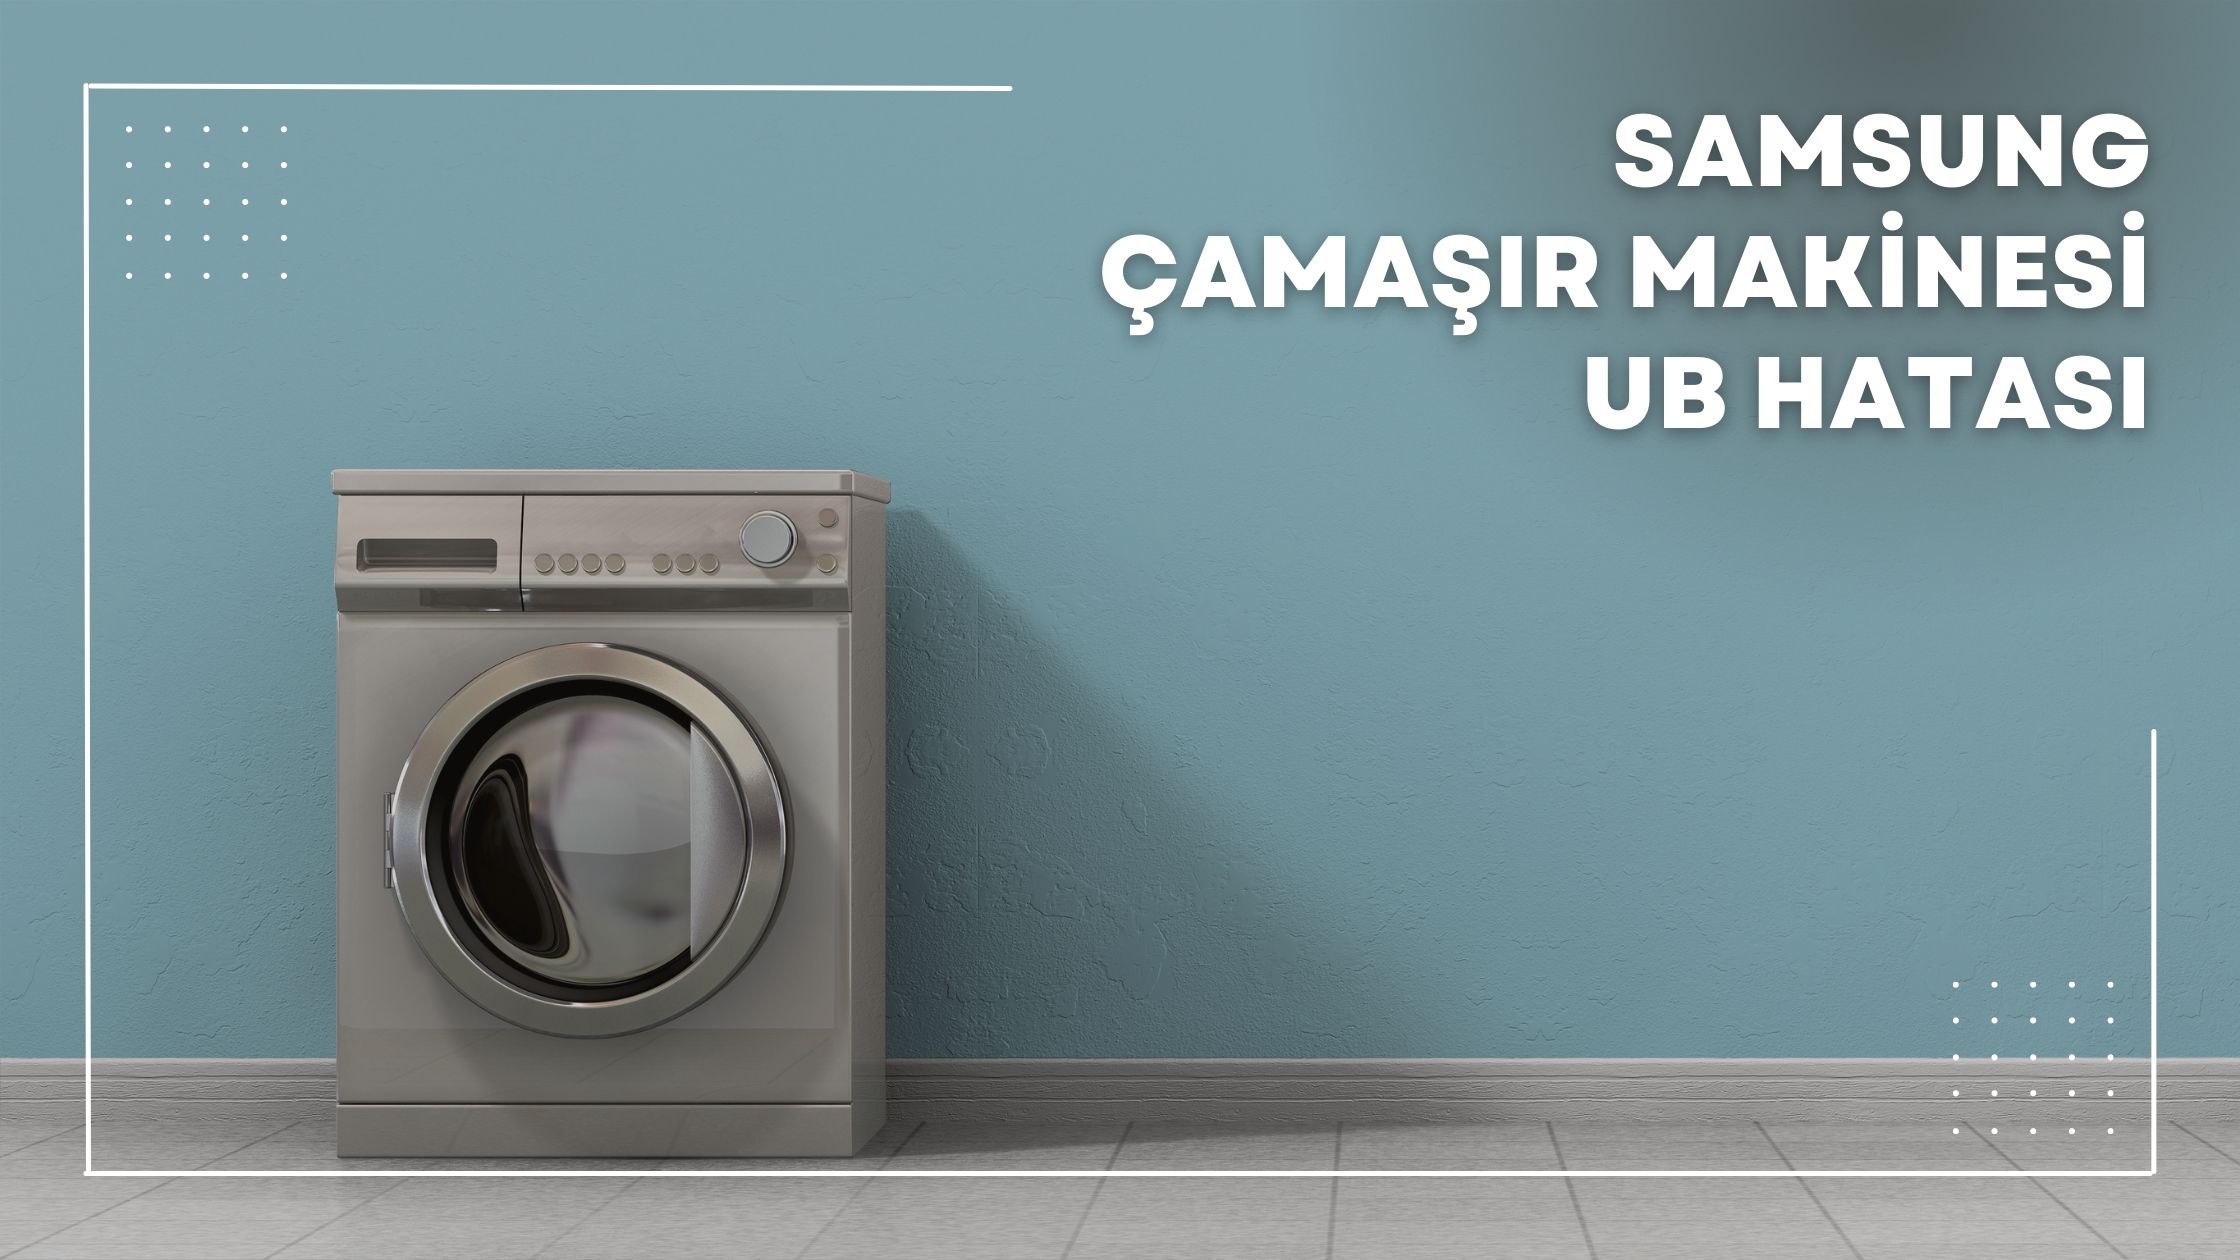 Samsung Çamaşır Makinesi Ub Hatası